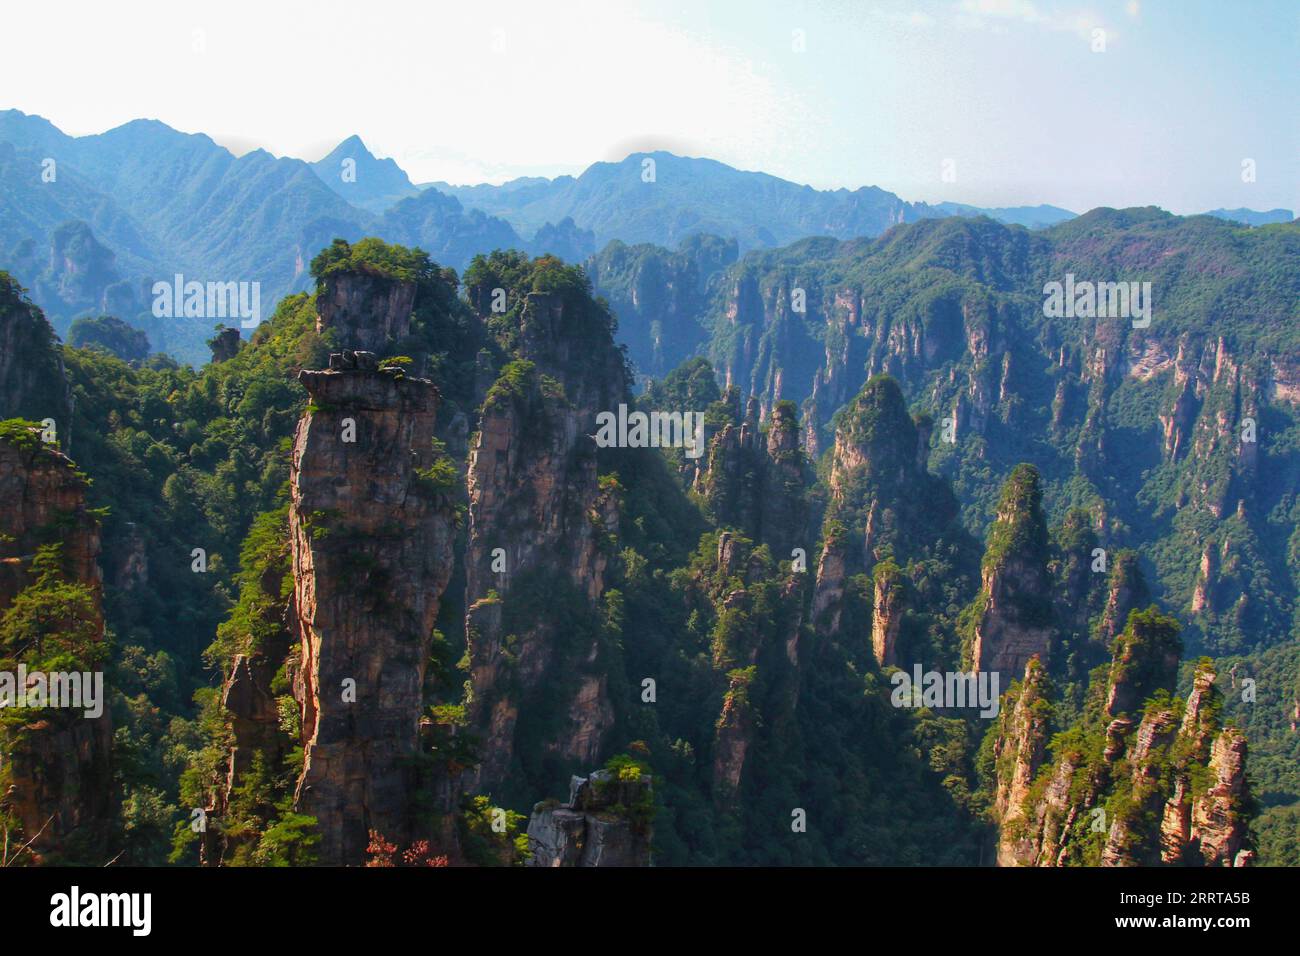 Halten Sie die atemberaubende Essenz von Chinas berühmten scharfen, hoch aufragenden Bergen fest, die an die beeindruckenden Landschaften aus dem Avatar-Film erinnern. Stockfoto